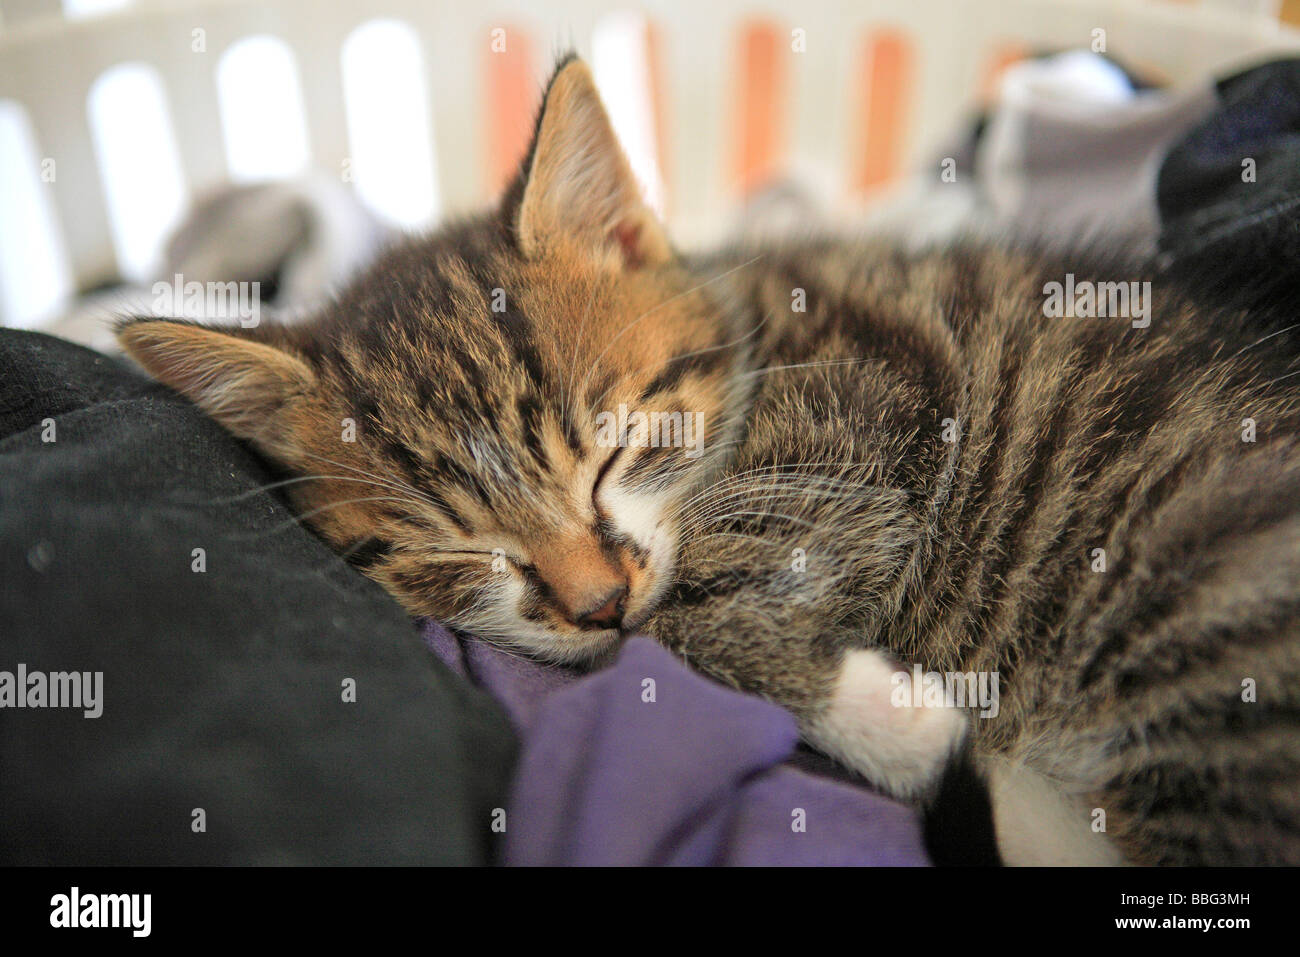 Sleeping Kitten In Laundry Basket Stock Photo